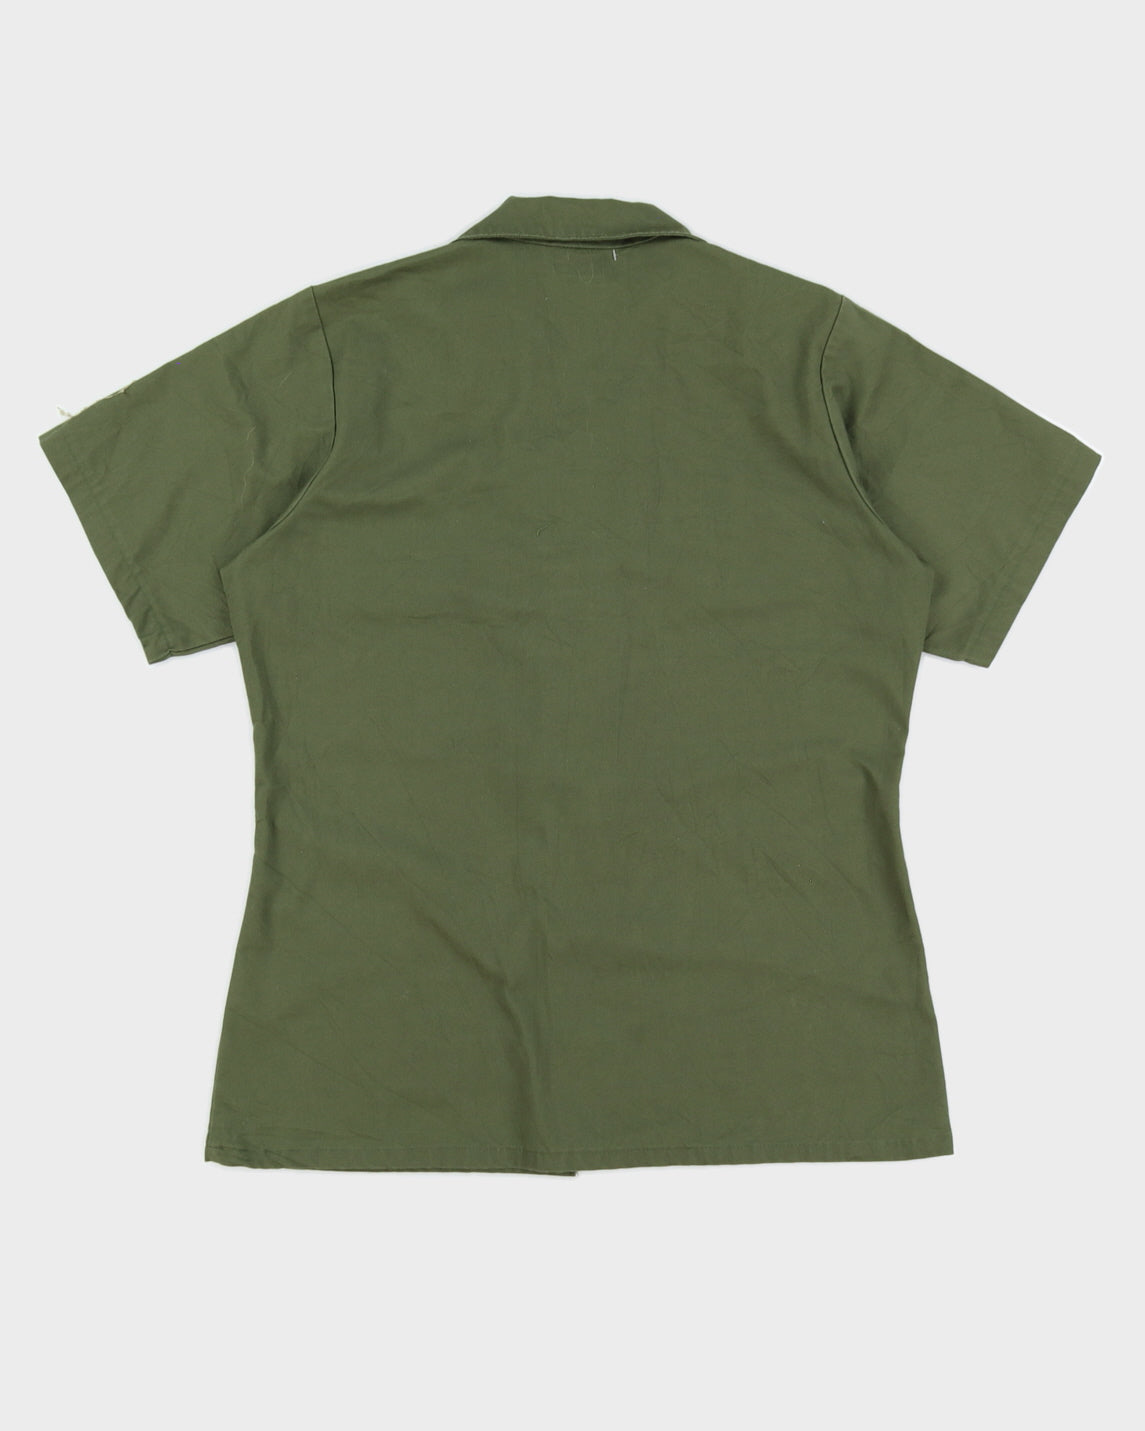 70s Vintage US Army OG-107 Shirt - M